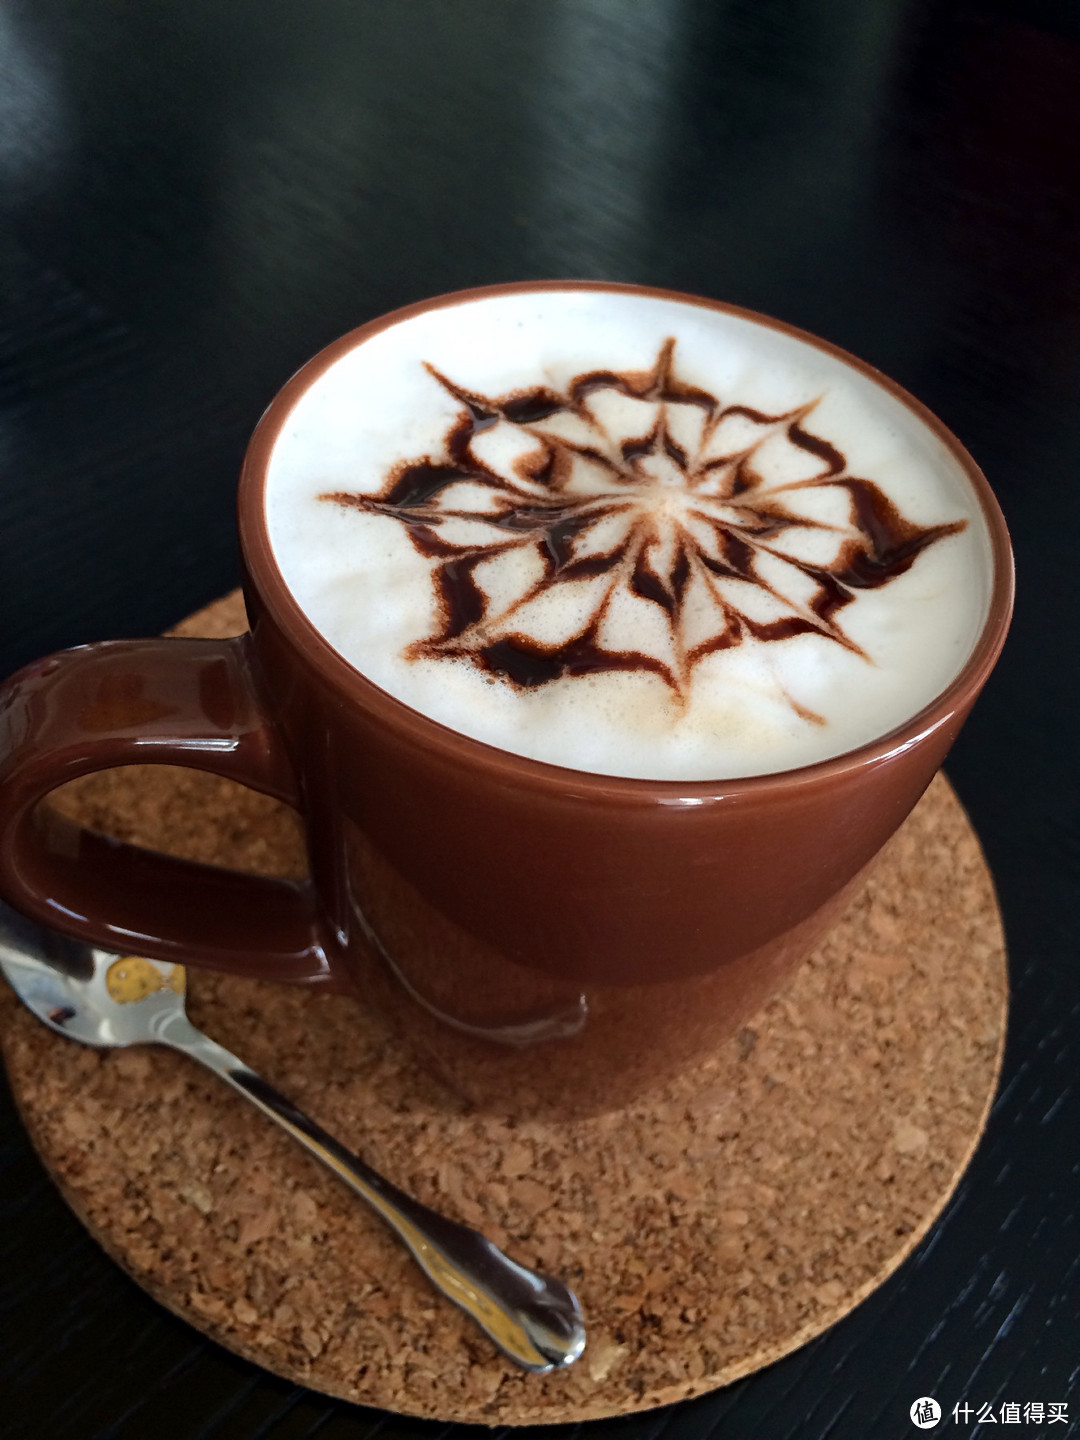 胶囊咖啡机机也能玩出小花样：Delonghi 德龙 EN520 胶囊咖啡机 制作简单花式咖啡